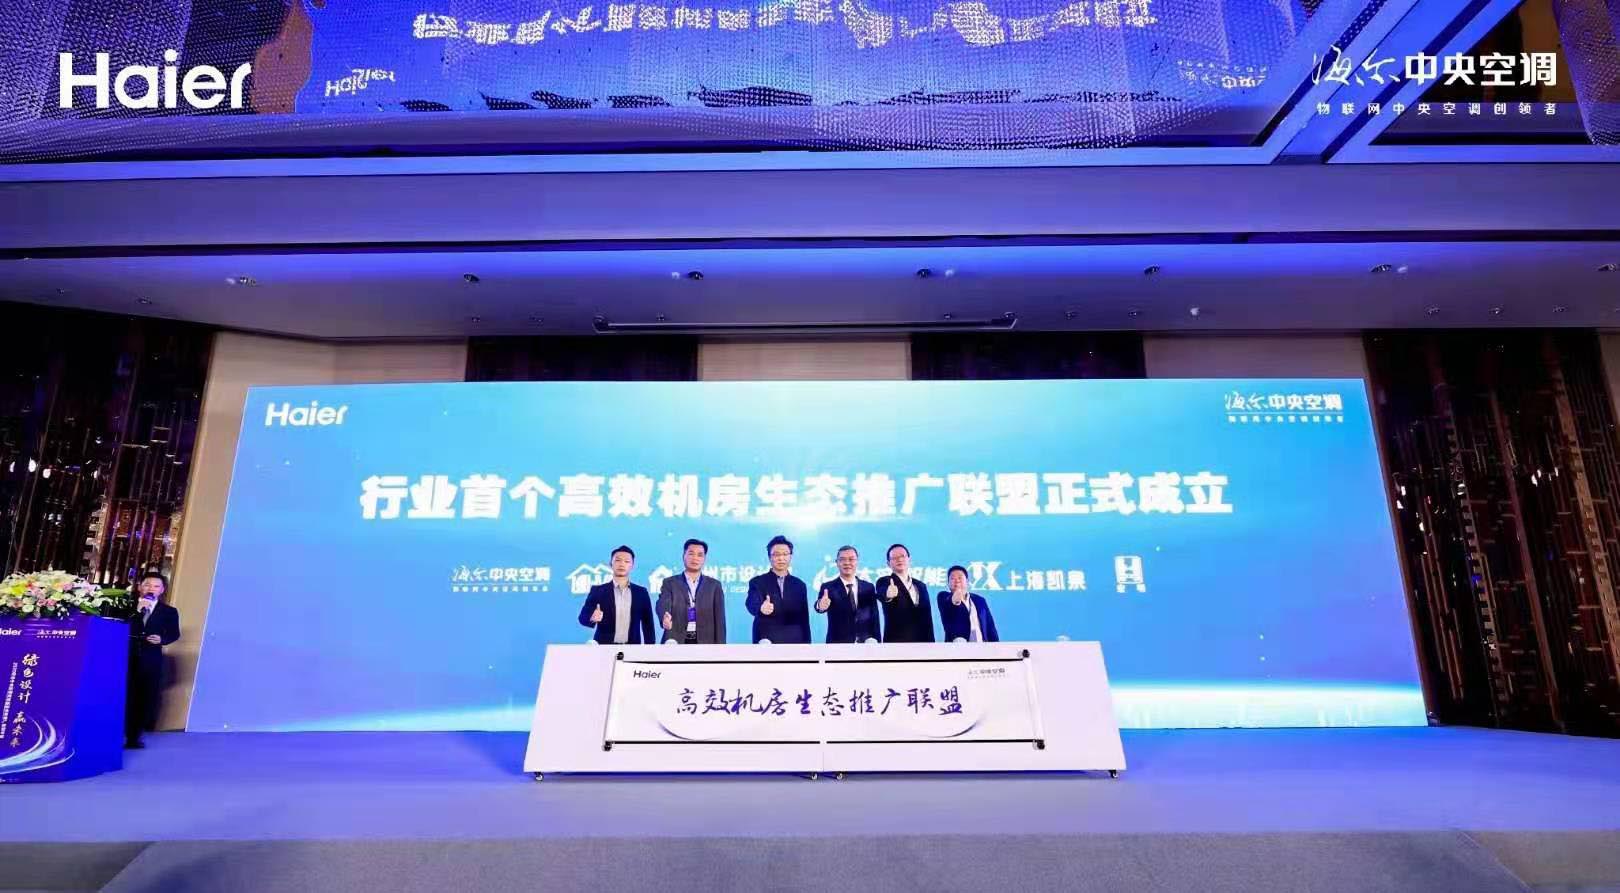 強強聯手共建綠色生態 | 上海凱泉成為首個高效機房生態推廣聯盟合作伙伴